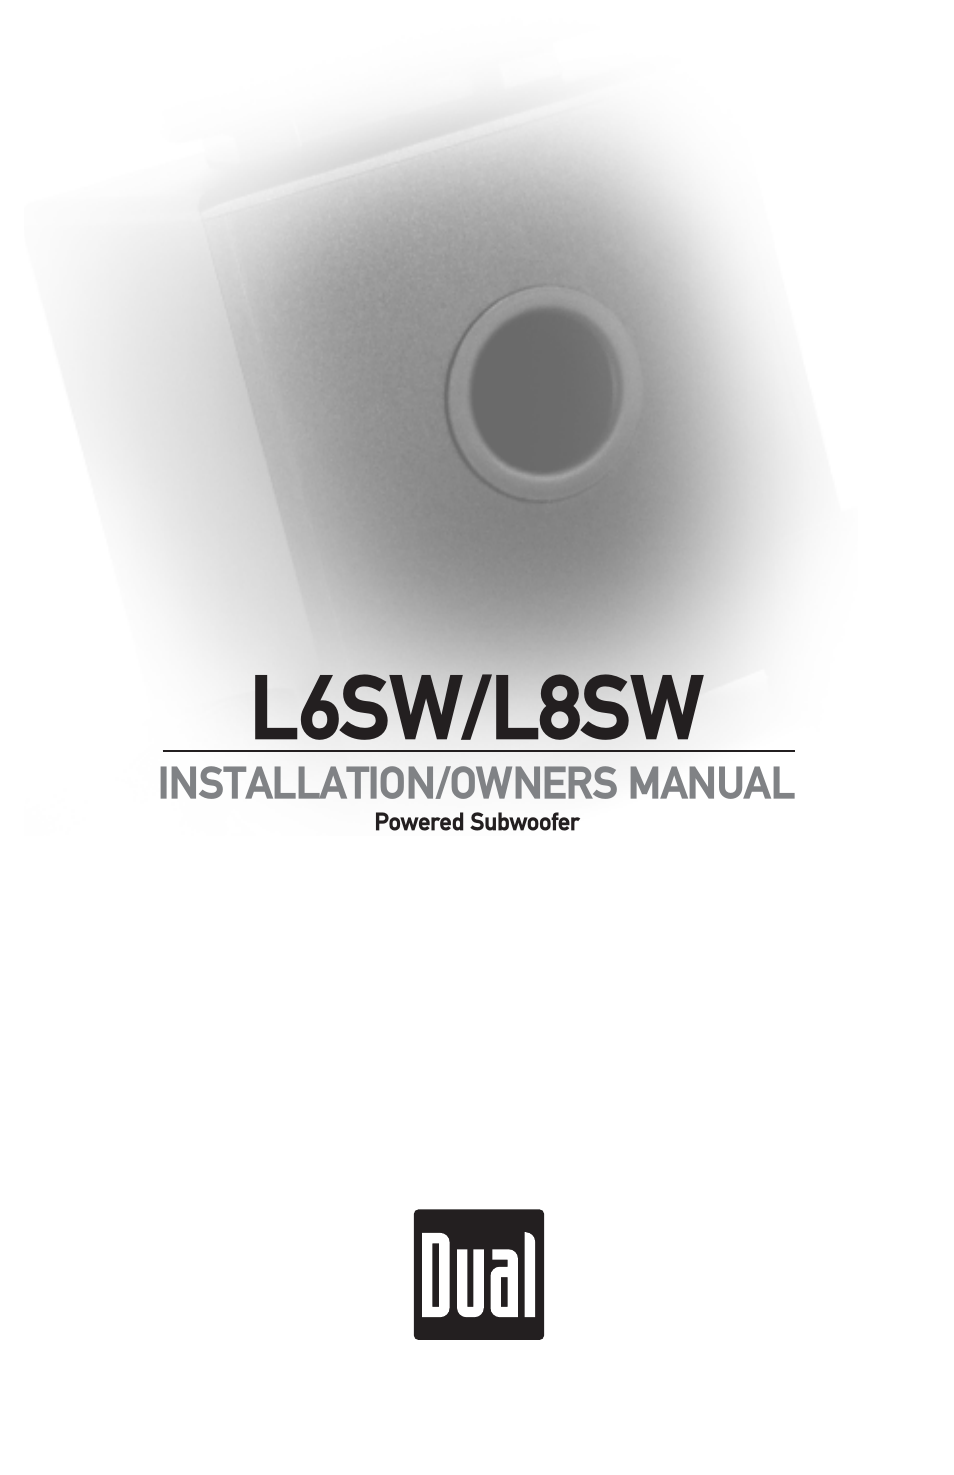 L8SW